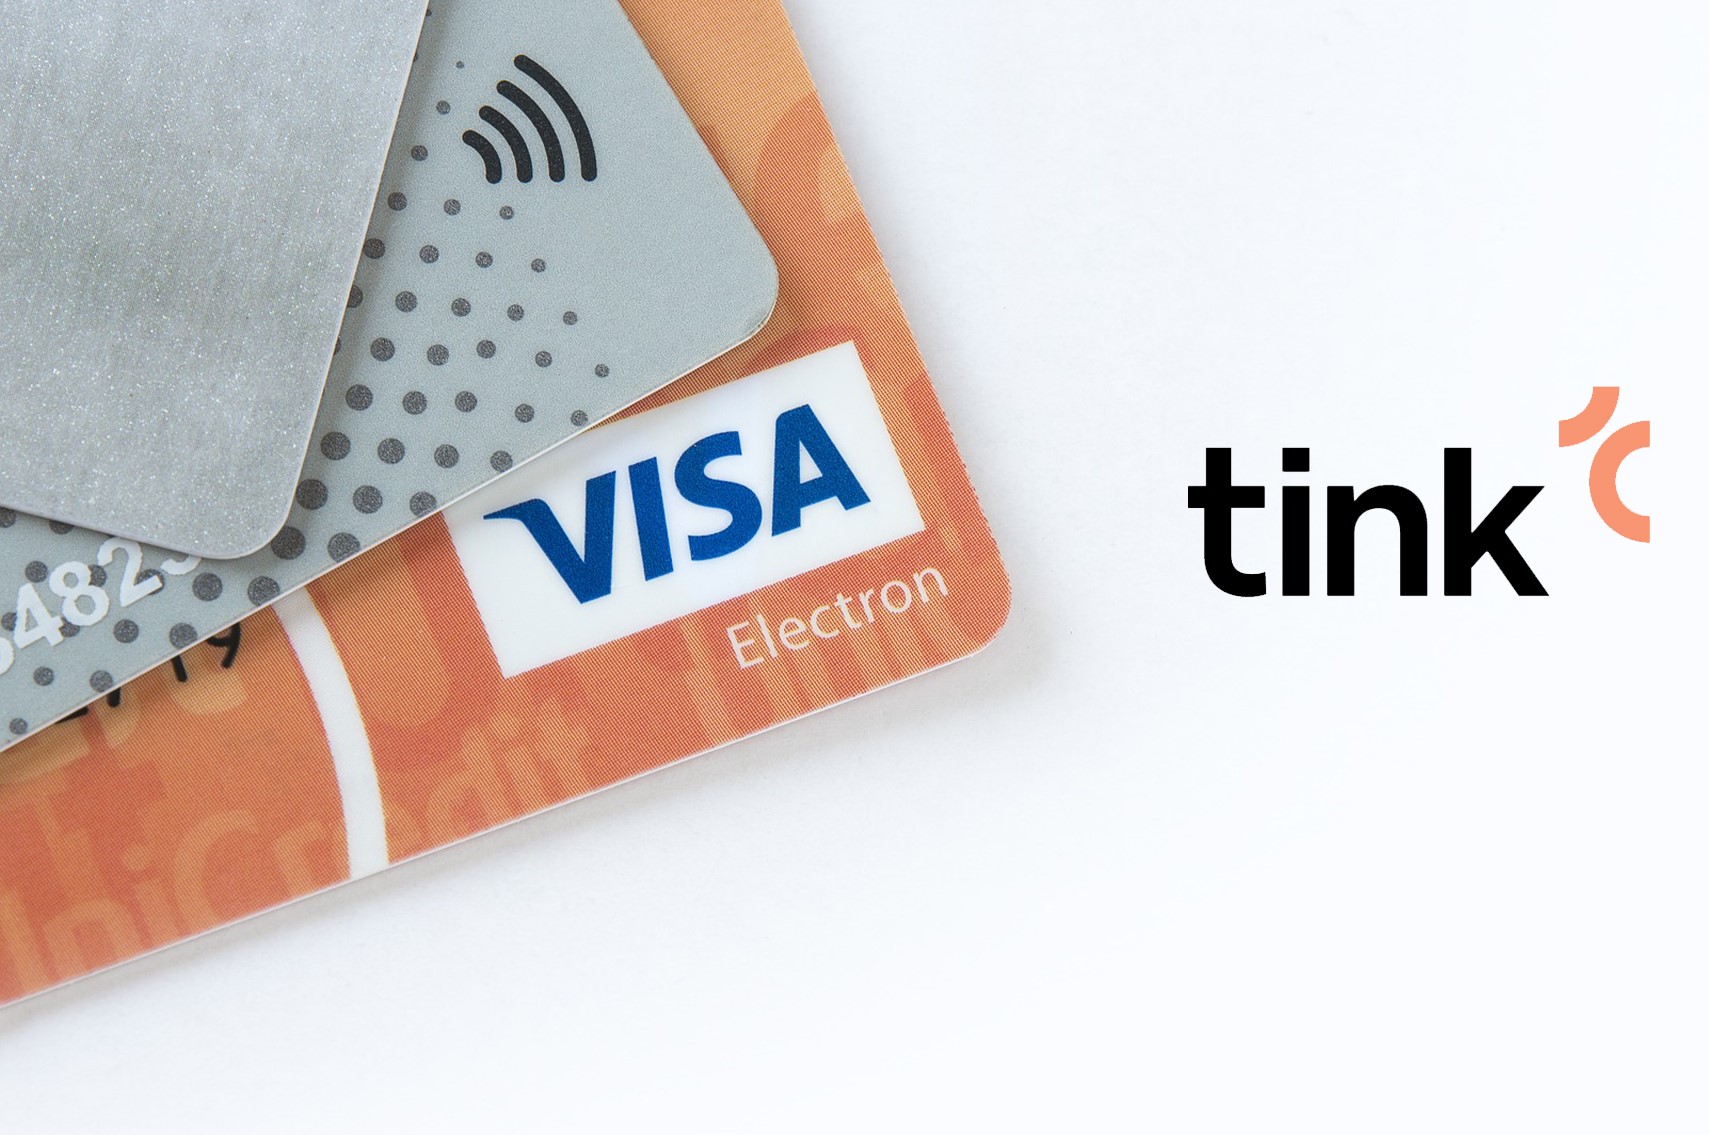 Visa kupuje švédsky fintech startup Tink za 2 miliardy